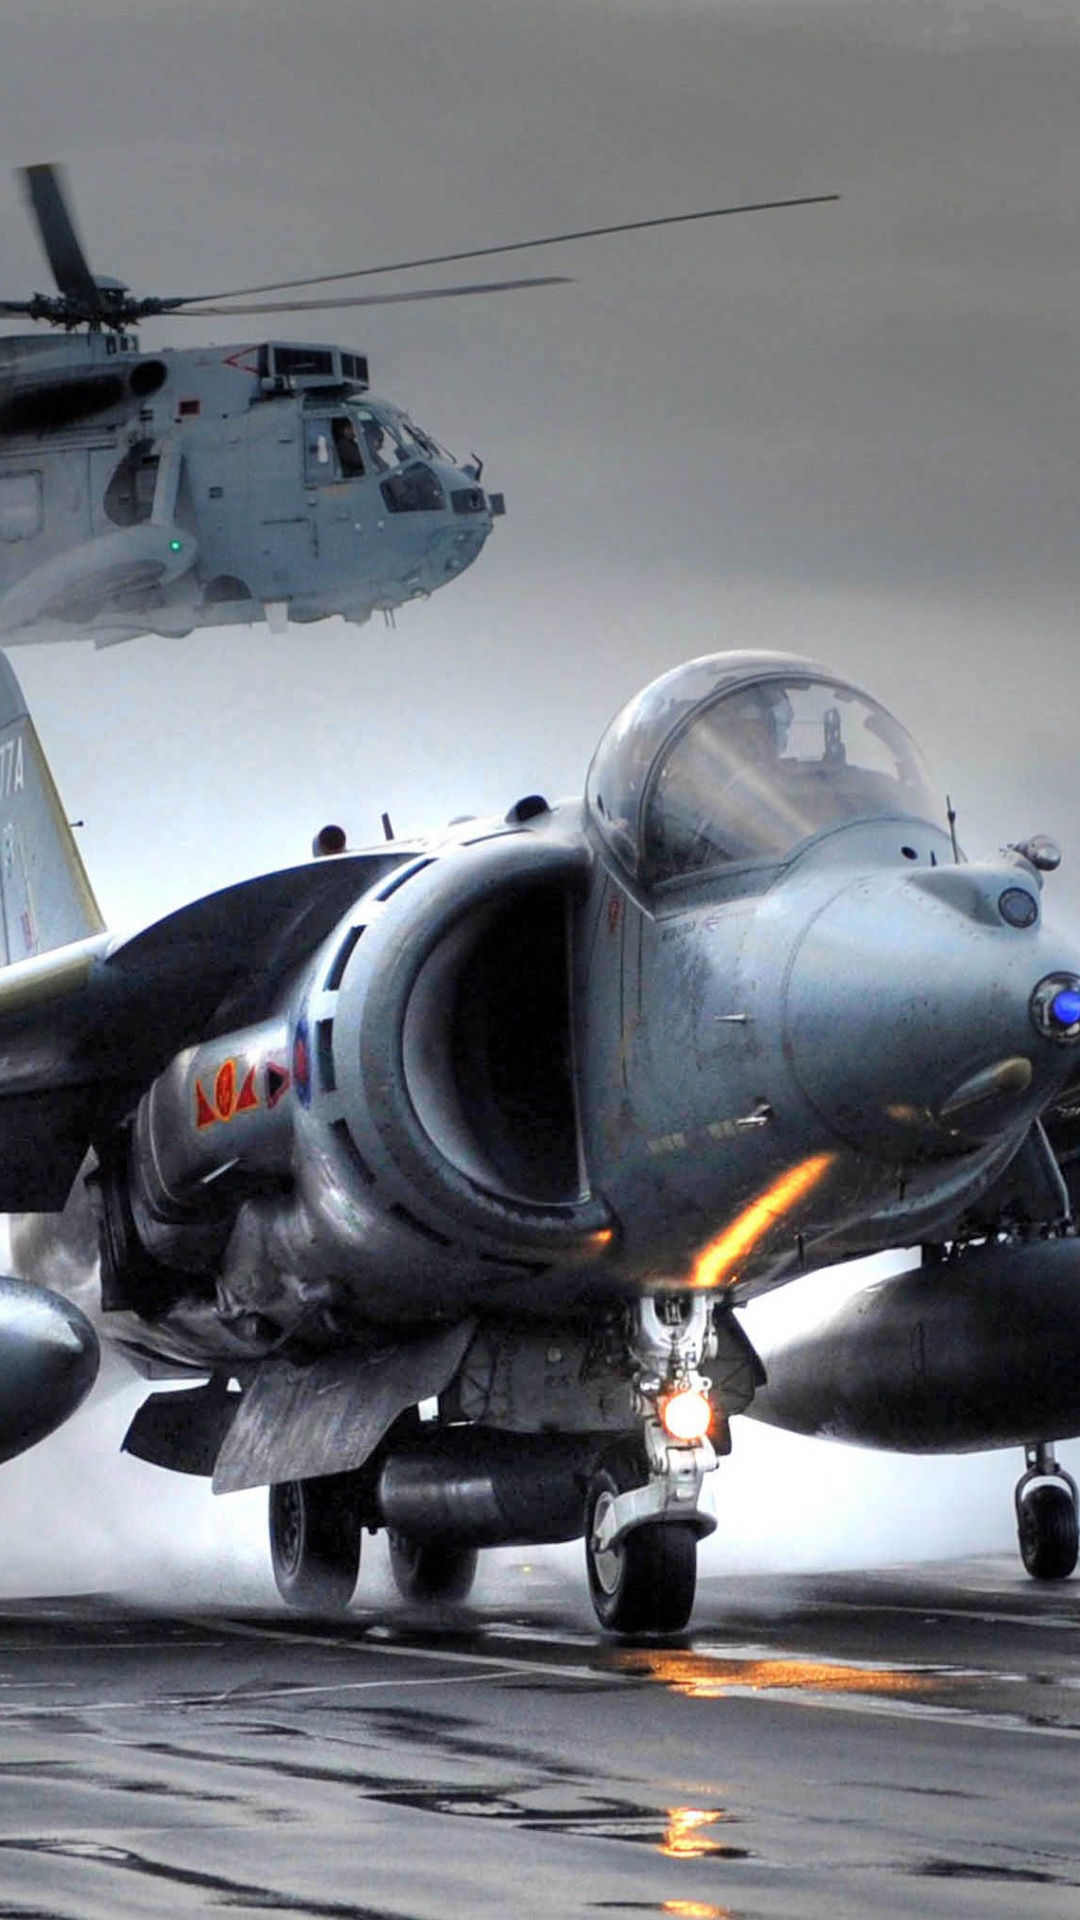 HMS方舟皇家, 麦克道格拉斯AV-8B Harrier II, 英国航空航天鹞II, 霍克*西德利鹞, 英国航空航天海鹞 壁纸 1080x1920 允许